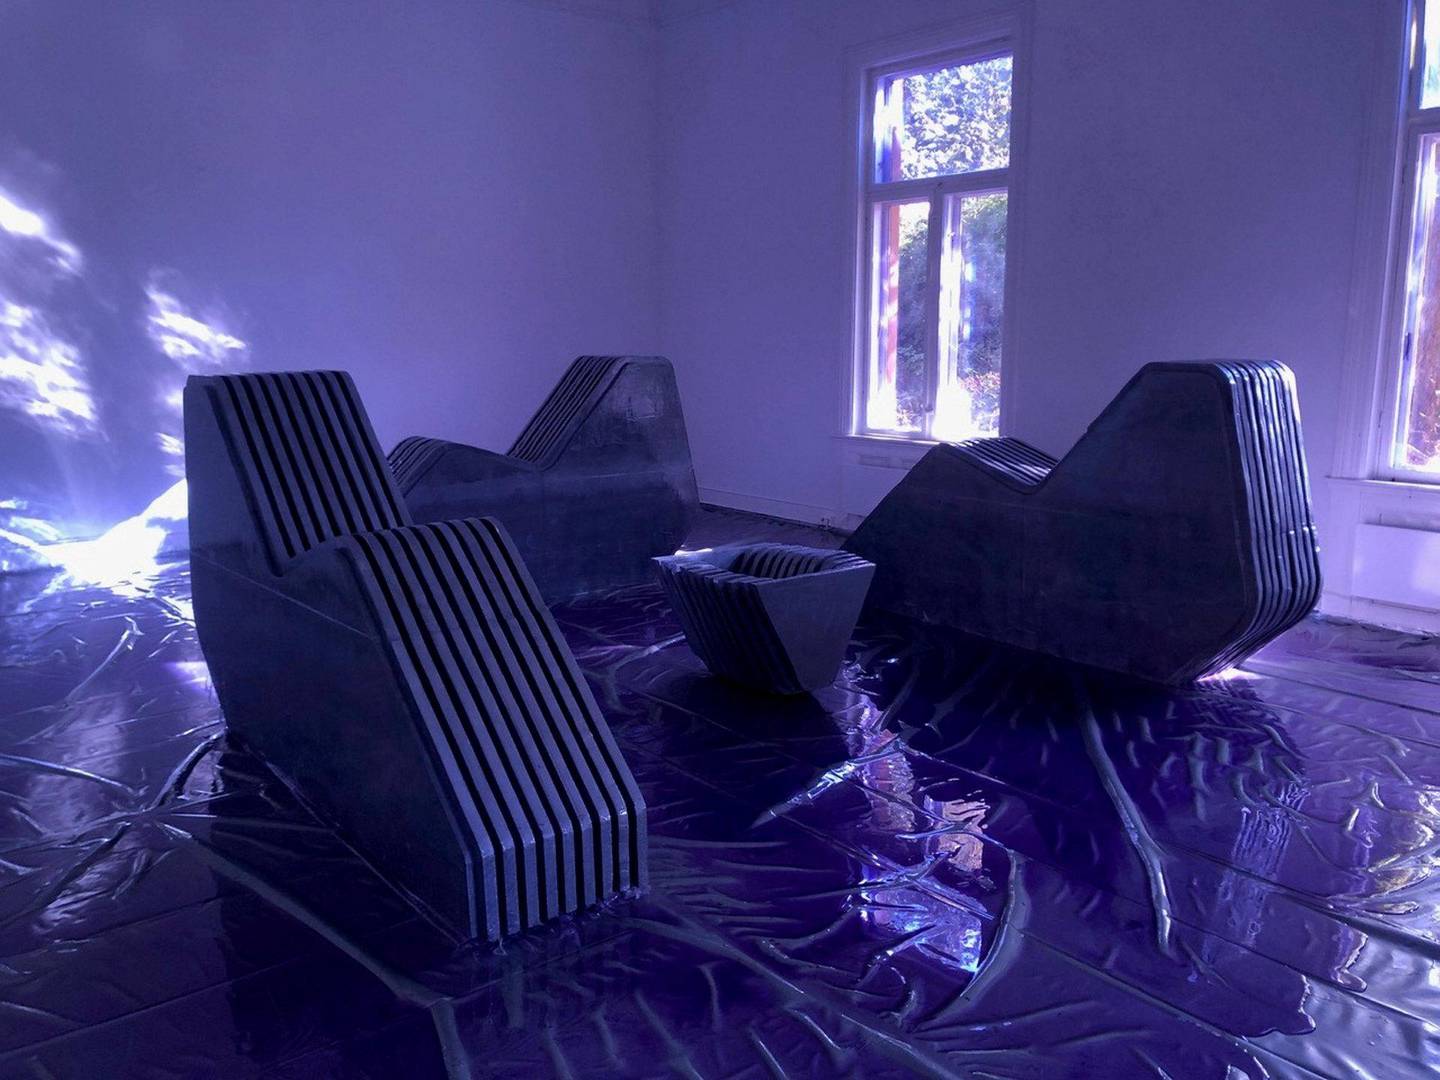 Tiril Hasselknippes installasjon med harde divaner er badet i et blått lys.
Foto: Silja Leifsdottir